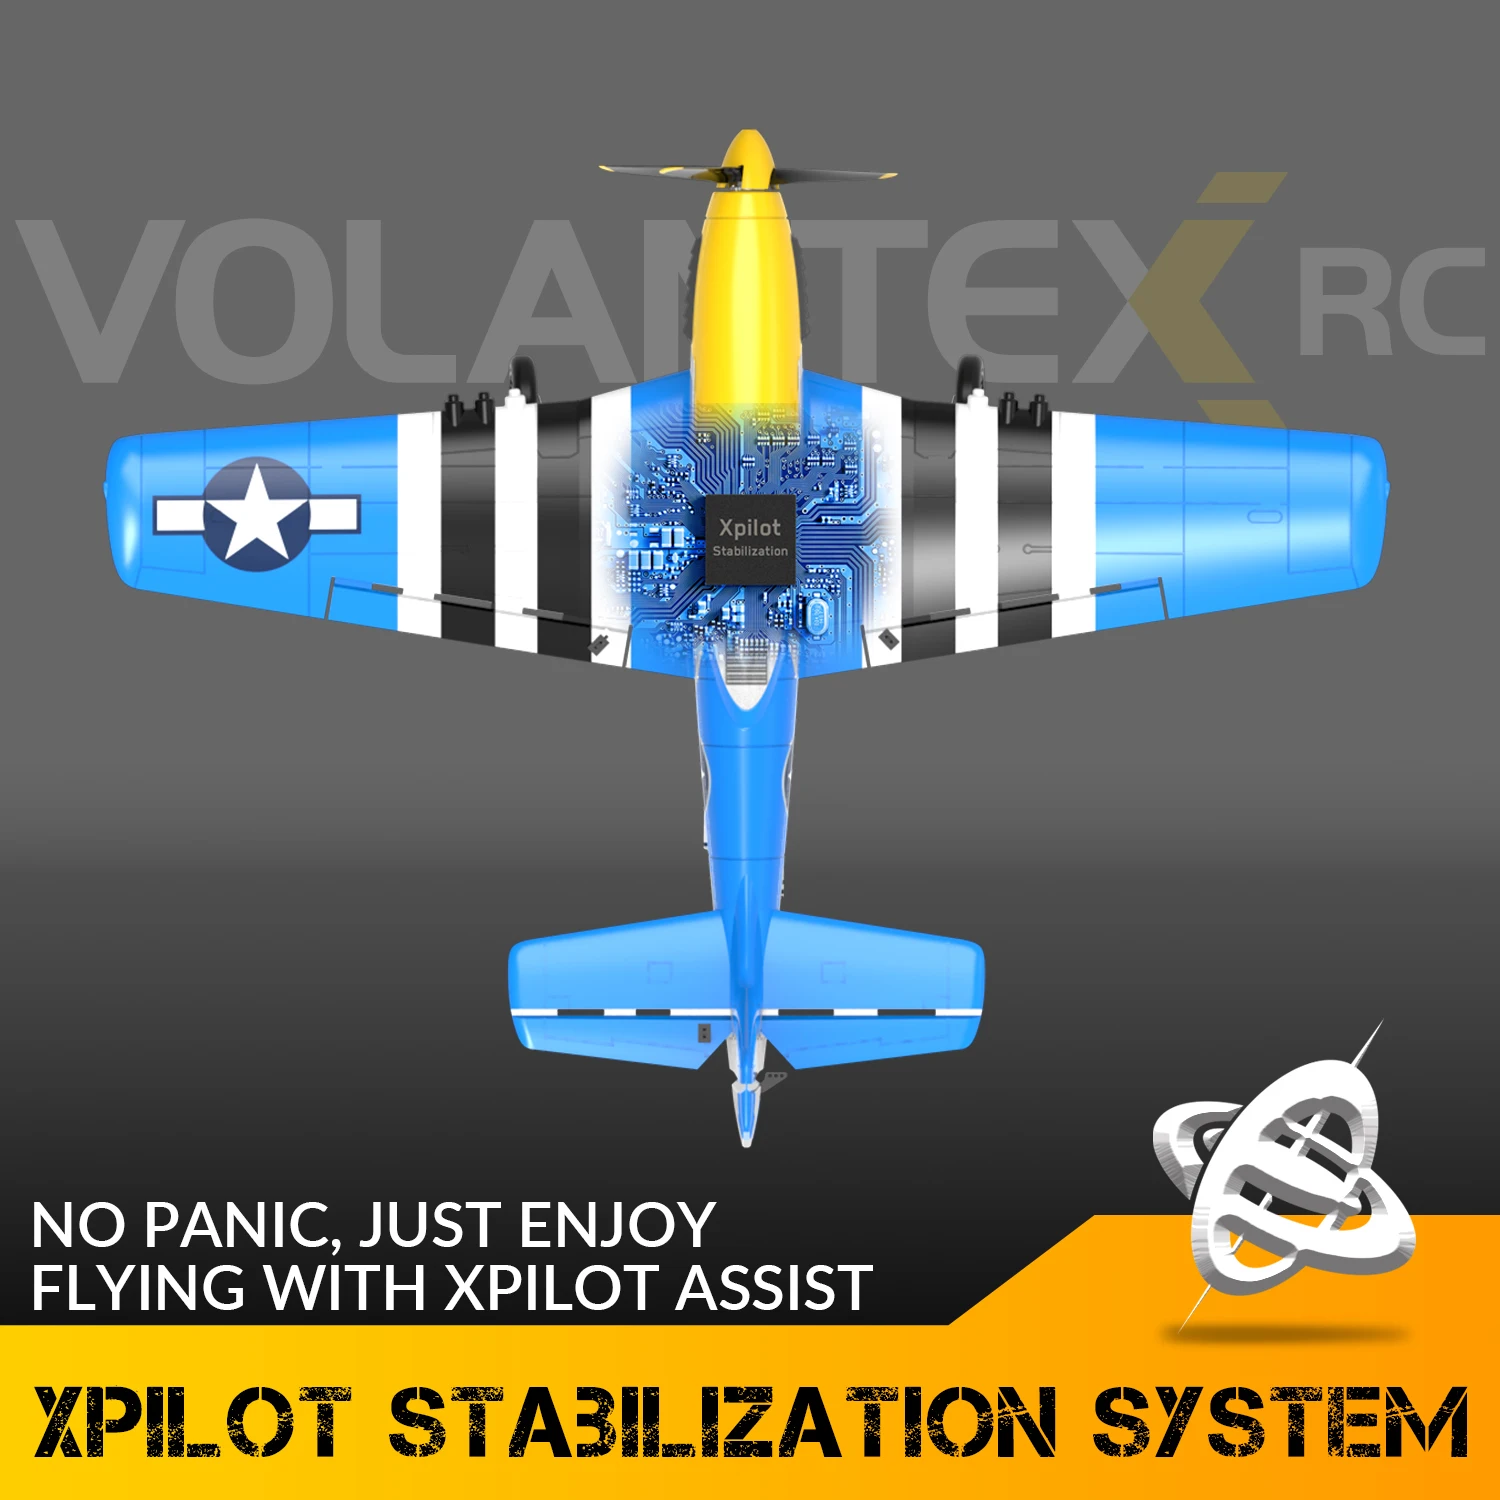 Avião de Controle Remoto com Sistema de Estabilização Xpilot, Avião RC  Ranger400, Brinquedos Aeronaves, Presentes, 761-6, 2.4GHz, Planador 3CH -  AliExpress